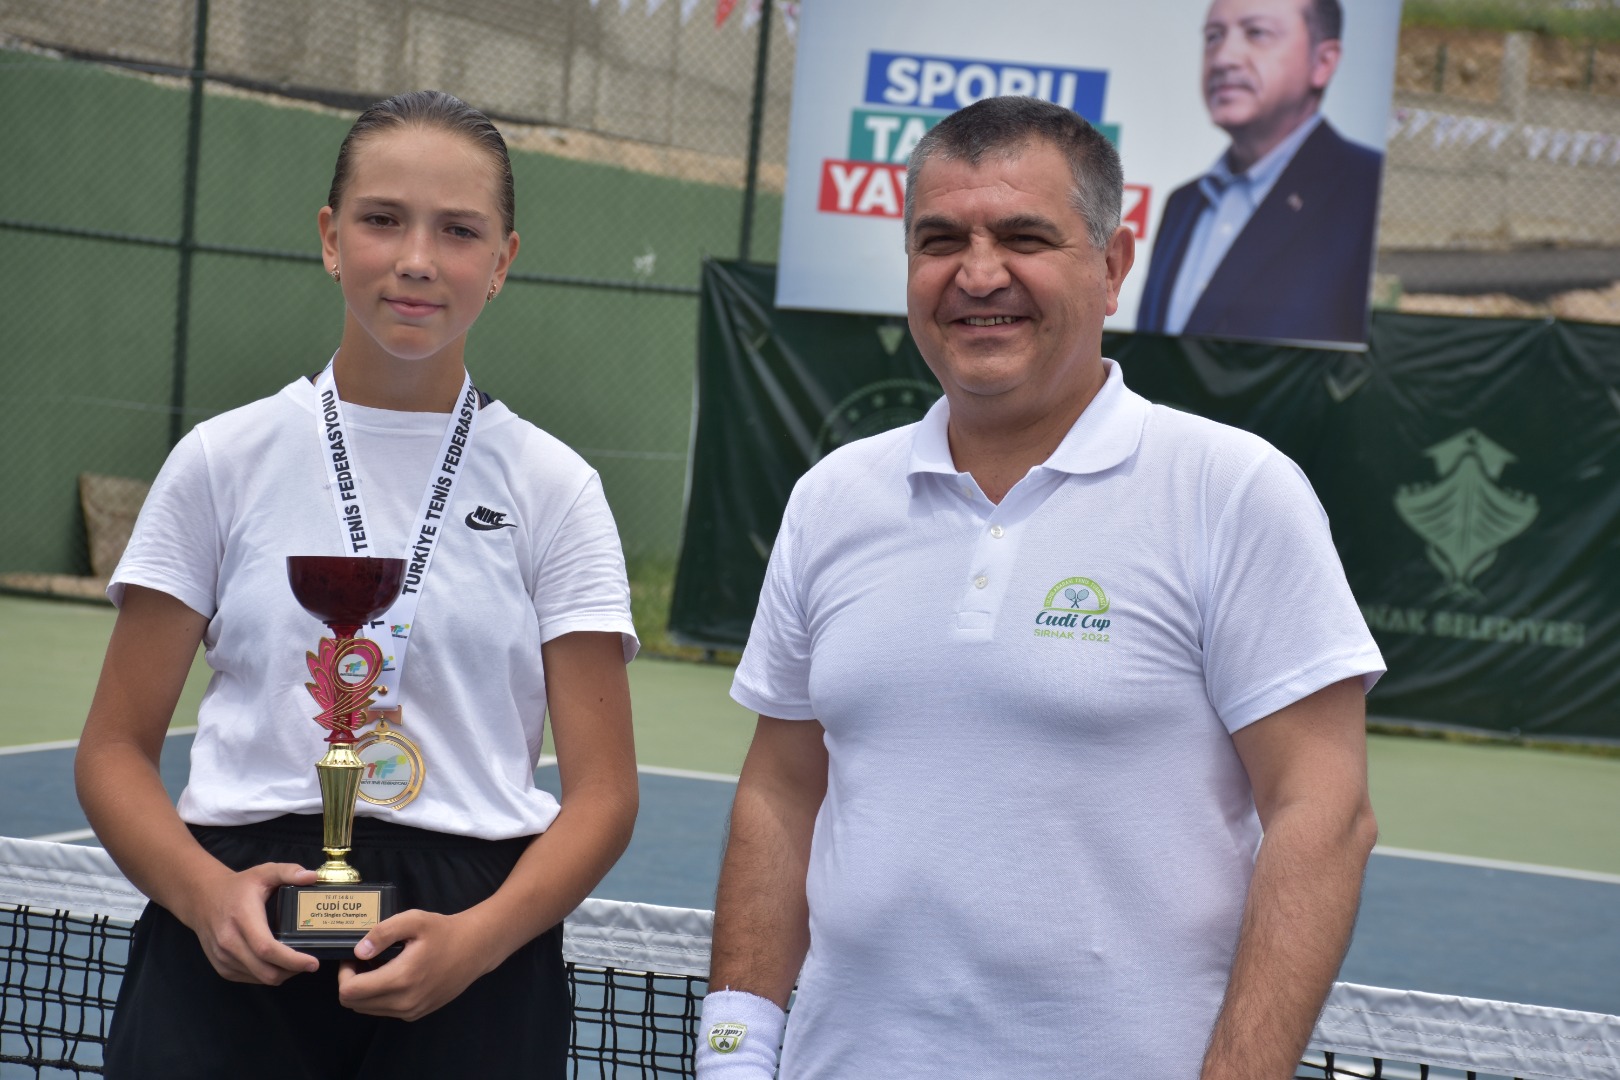 Cudi Cup Uluslararası Tenis Turnuvası'nda kazananlar belli oldu 5